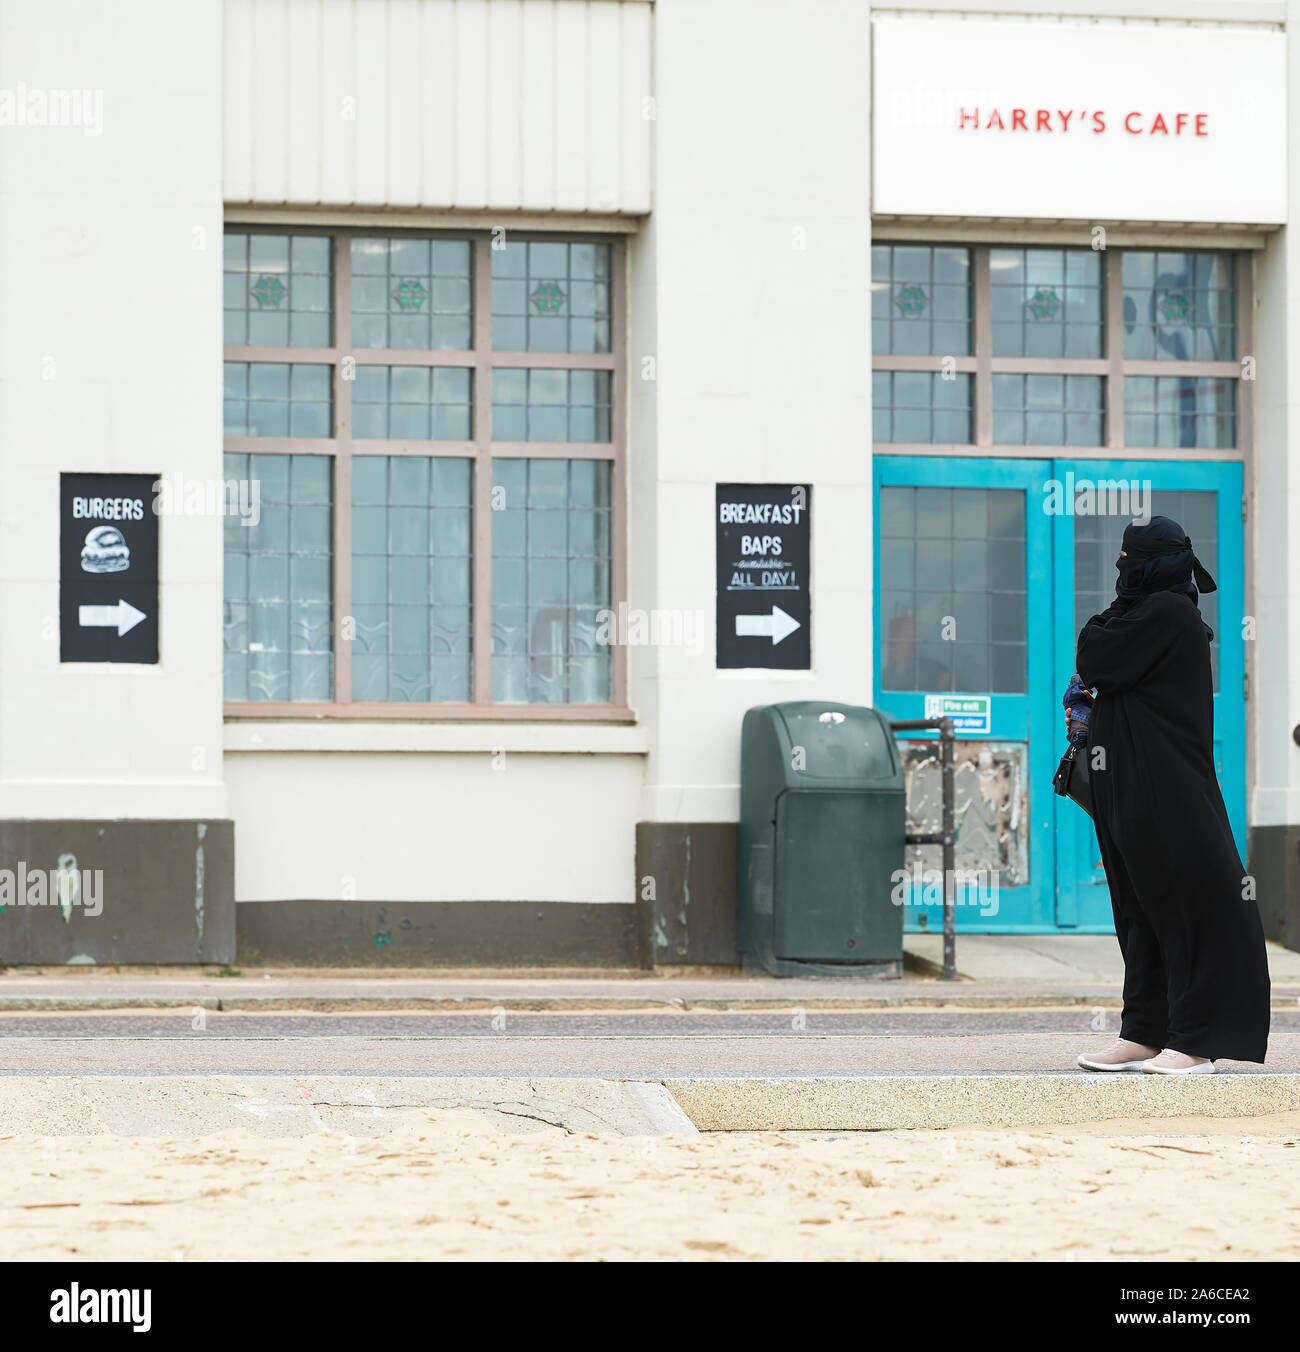 Eine Frau in voller nikab Hijab schwarzen Kleid steht auf der Promenade nahe der Sandstrand in Bournemouth, England, außerhalb von Harry's Cafe. Stockfoto